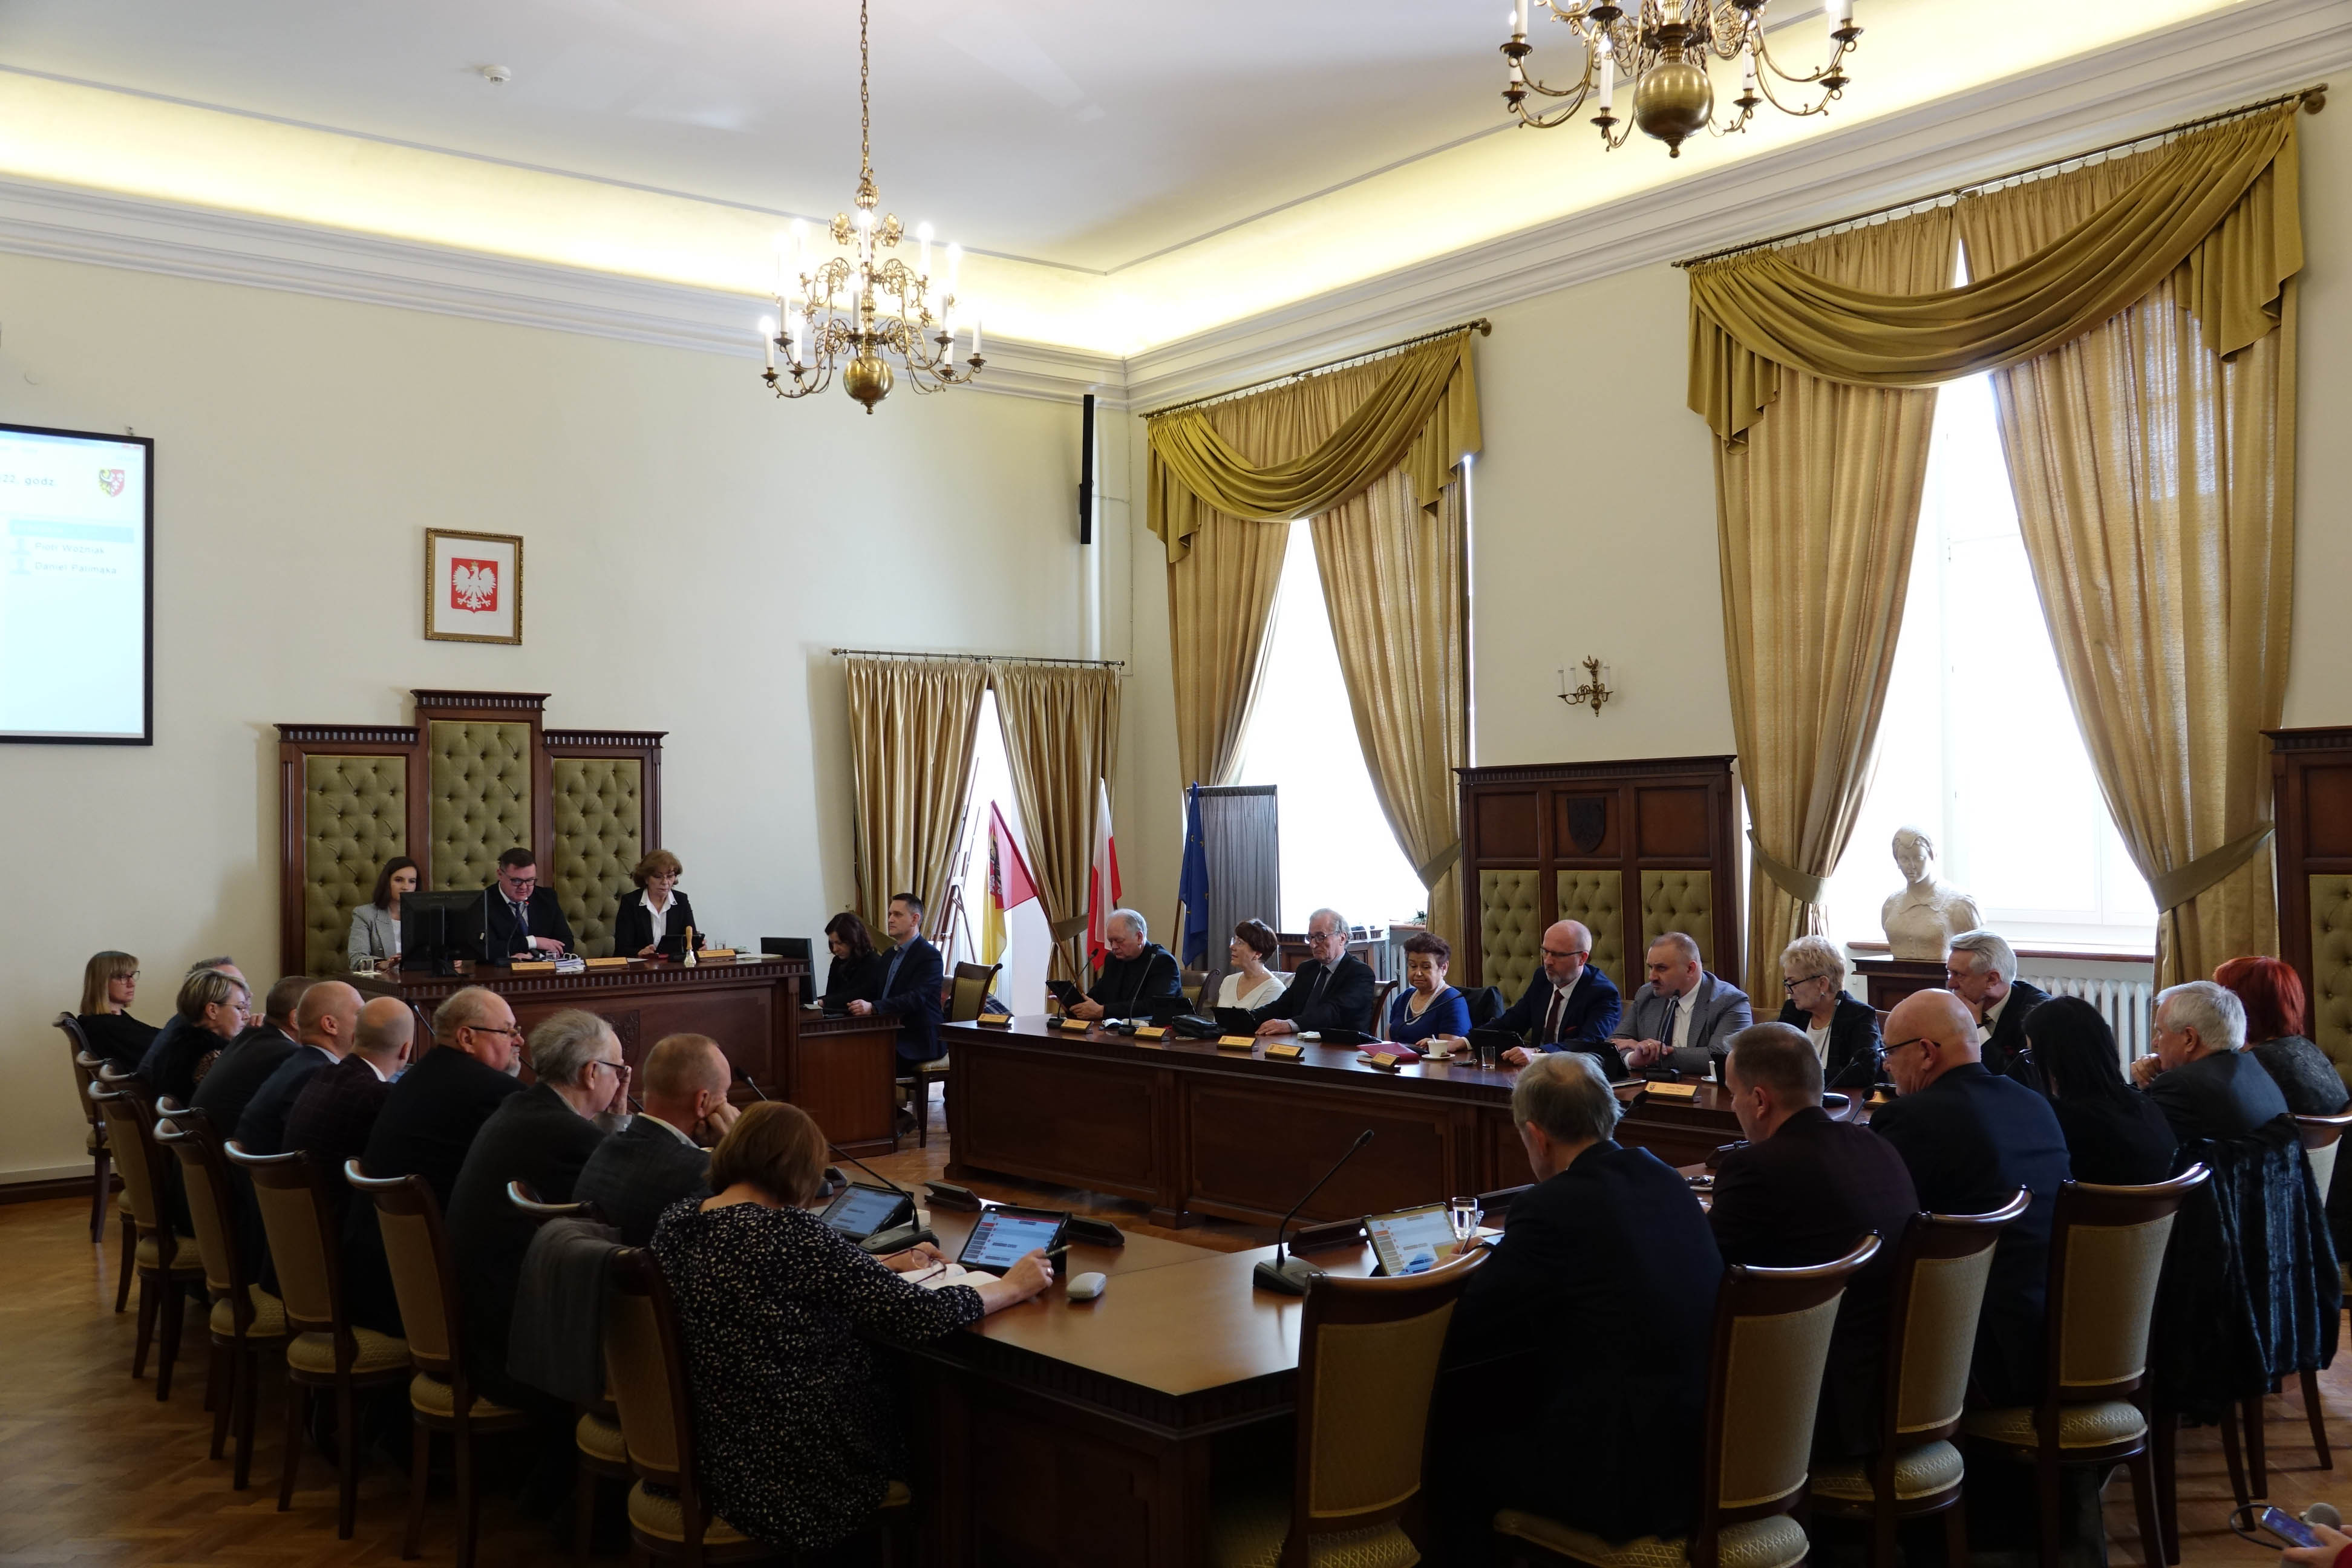 Radni podczas sesjii Rady Powiatu w Nysie w Mzueum Powiatowym